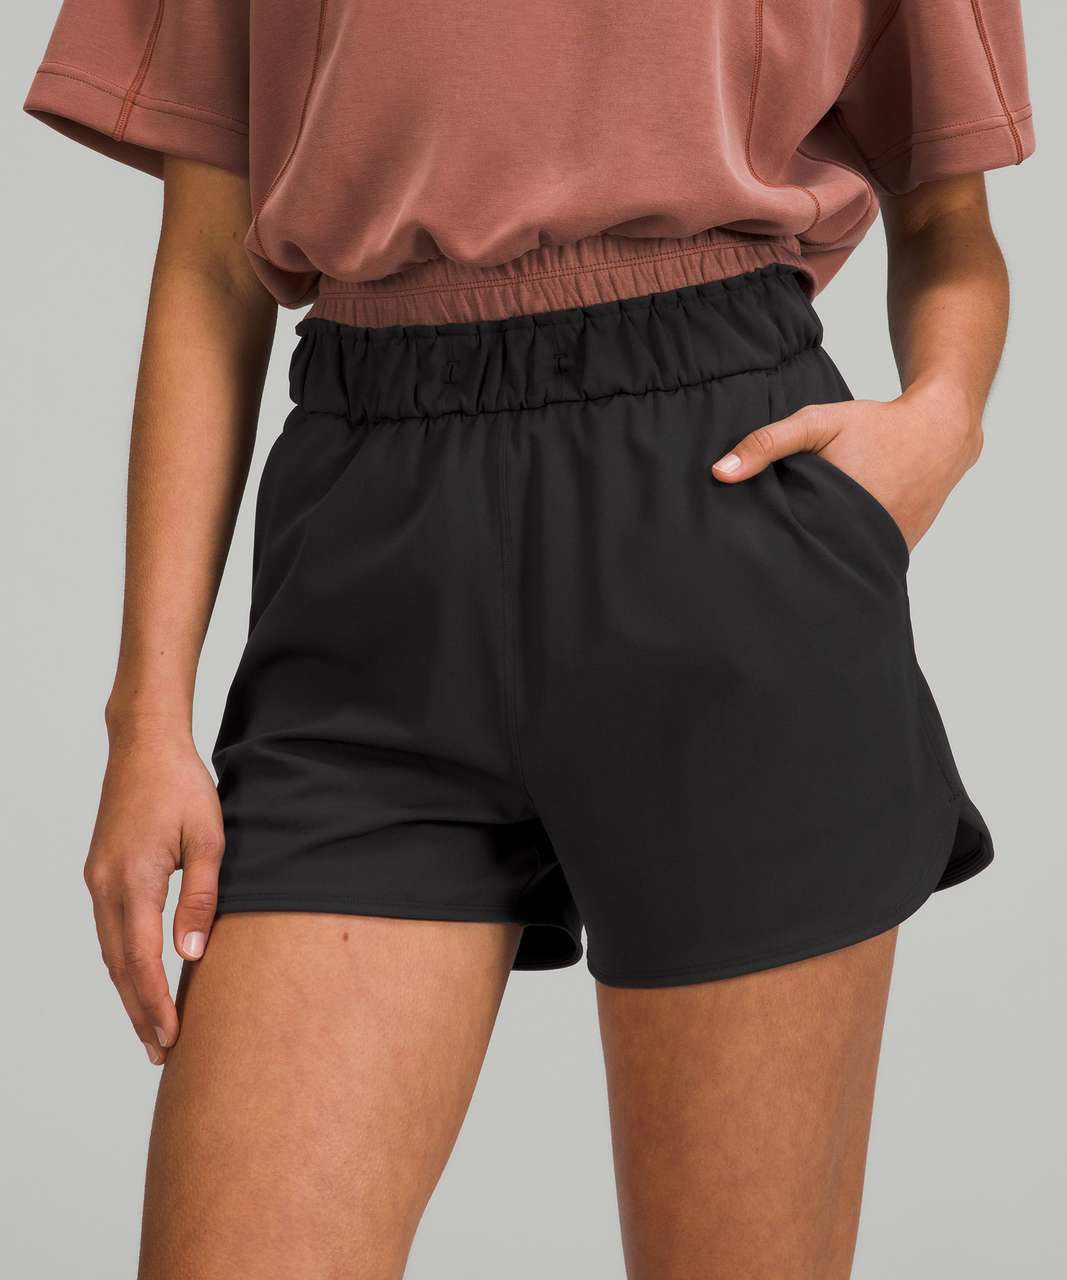 Black Shorts - High-Waisted Shorts - Belted Shorts - Lulus